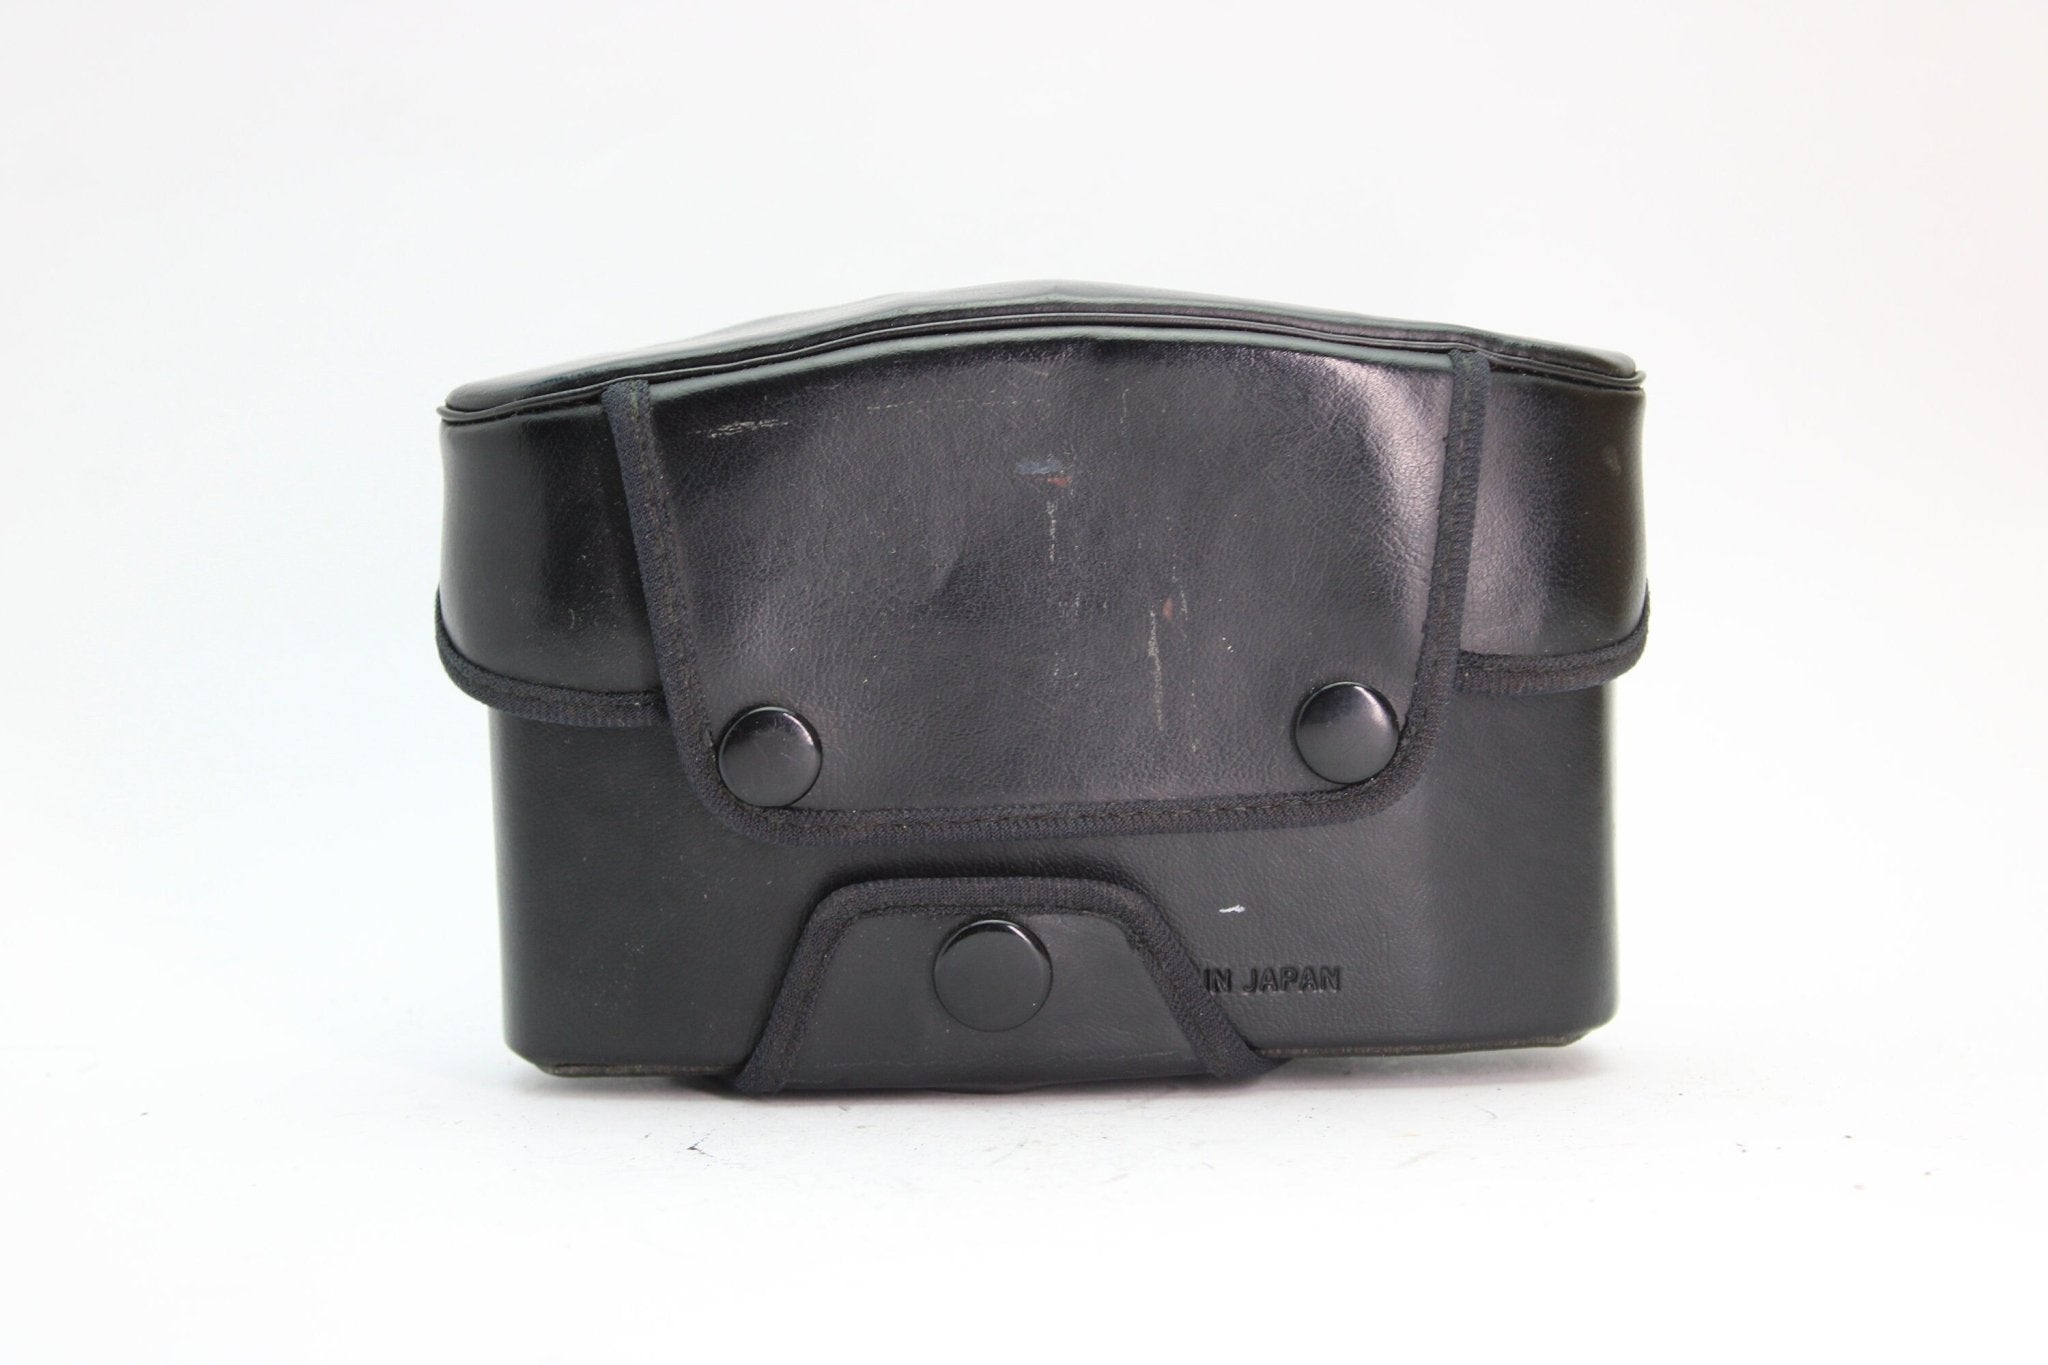 Ricoh Black Leather Case - Ricoh